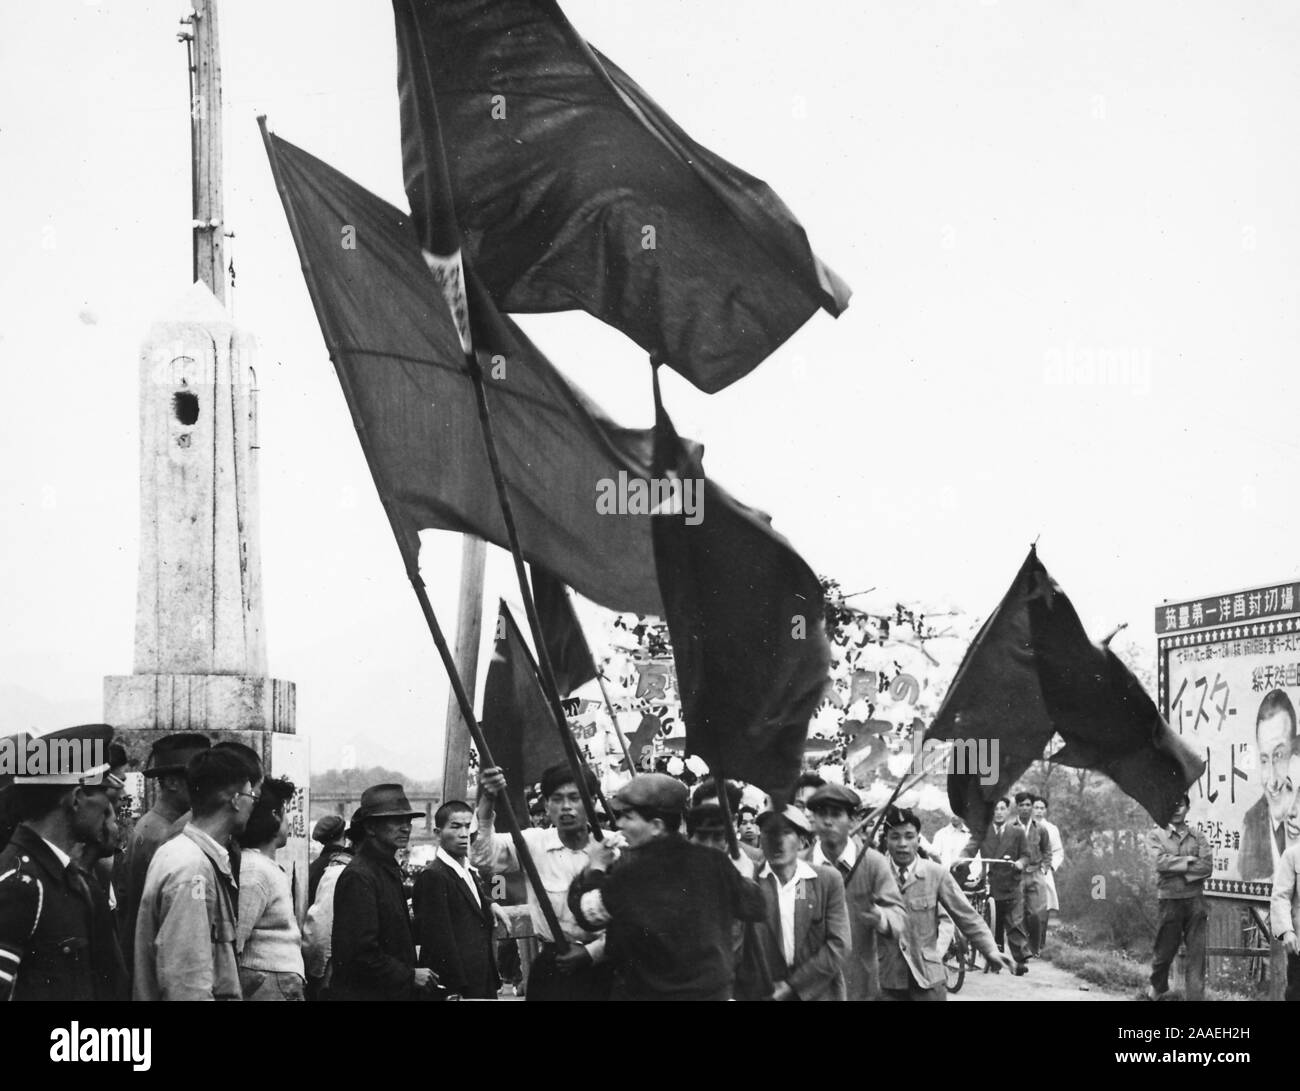 Eine flag-waving Masse der Demonstranten marschiert in Richtung der Kamera an einem bewölkten Tag, mit Passanten, einschließlich Polizisten, ihre Fortschritte beobachten von beiden Seiten der Straße, in der Präfektur Fukuoka, Japan, 1950. () Stockfoto